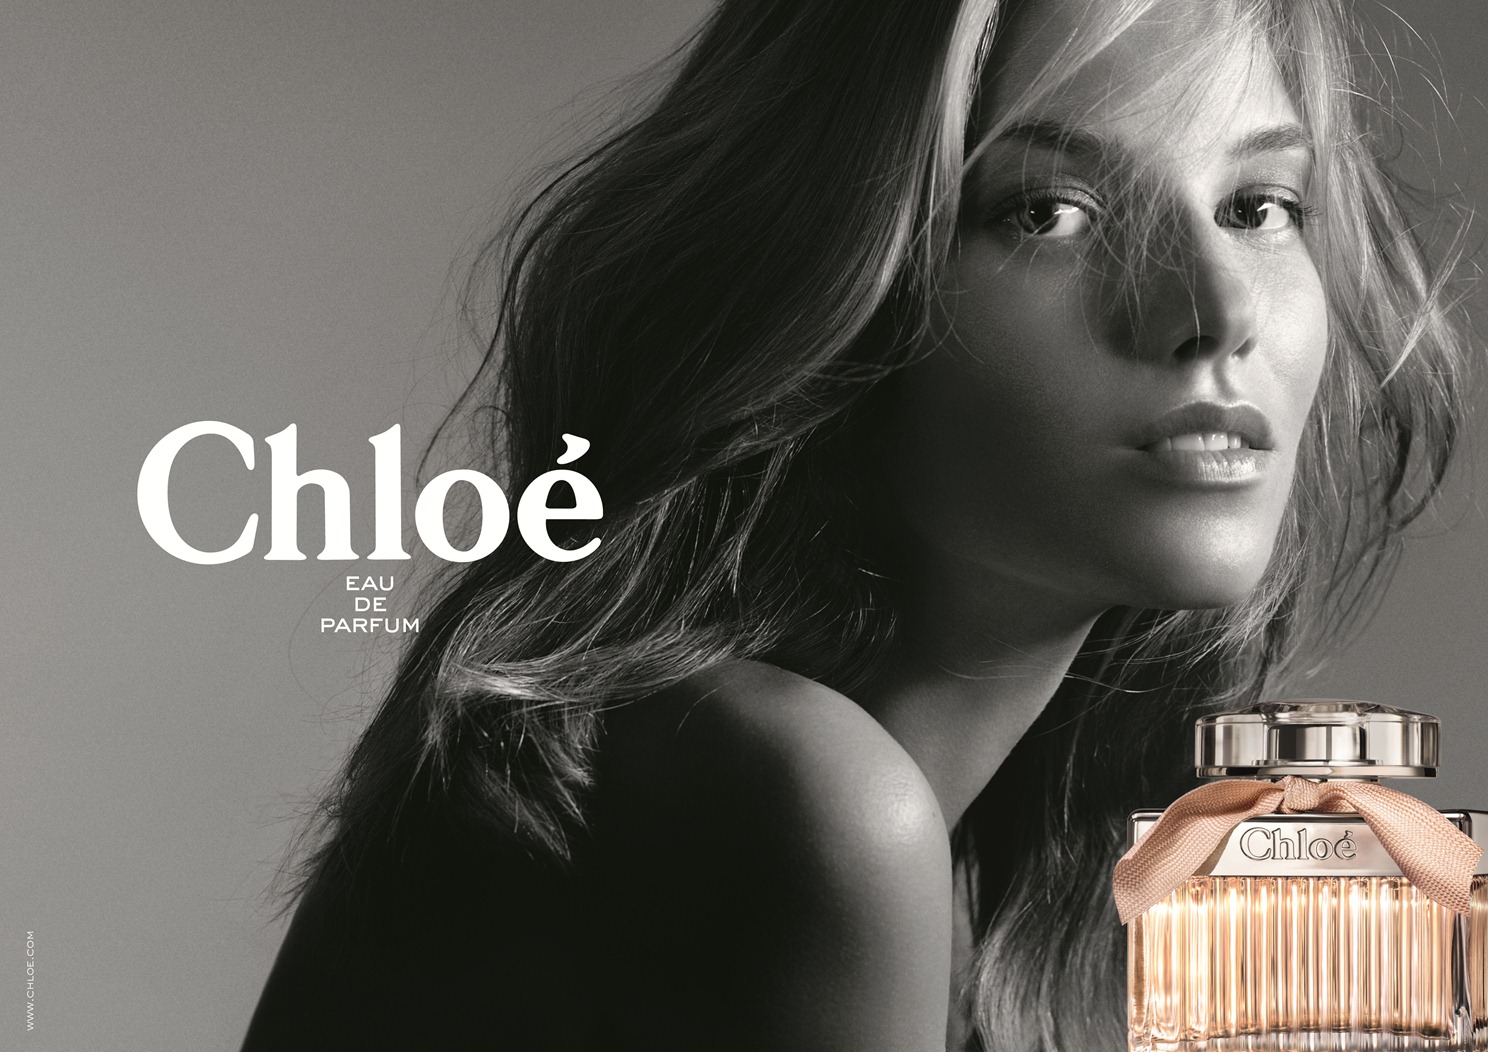 Fashionista Smile: Meet the Model behind Chloé Eau de Parfum